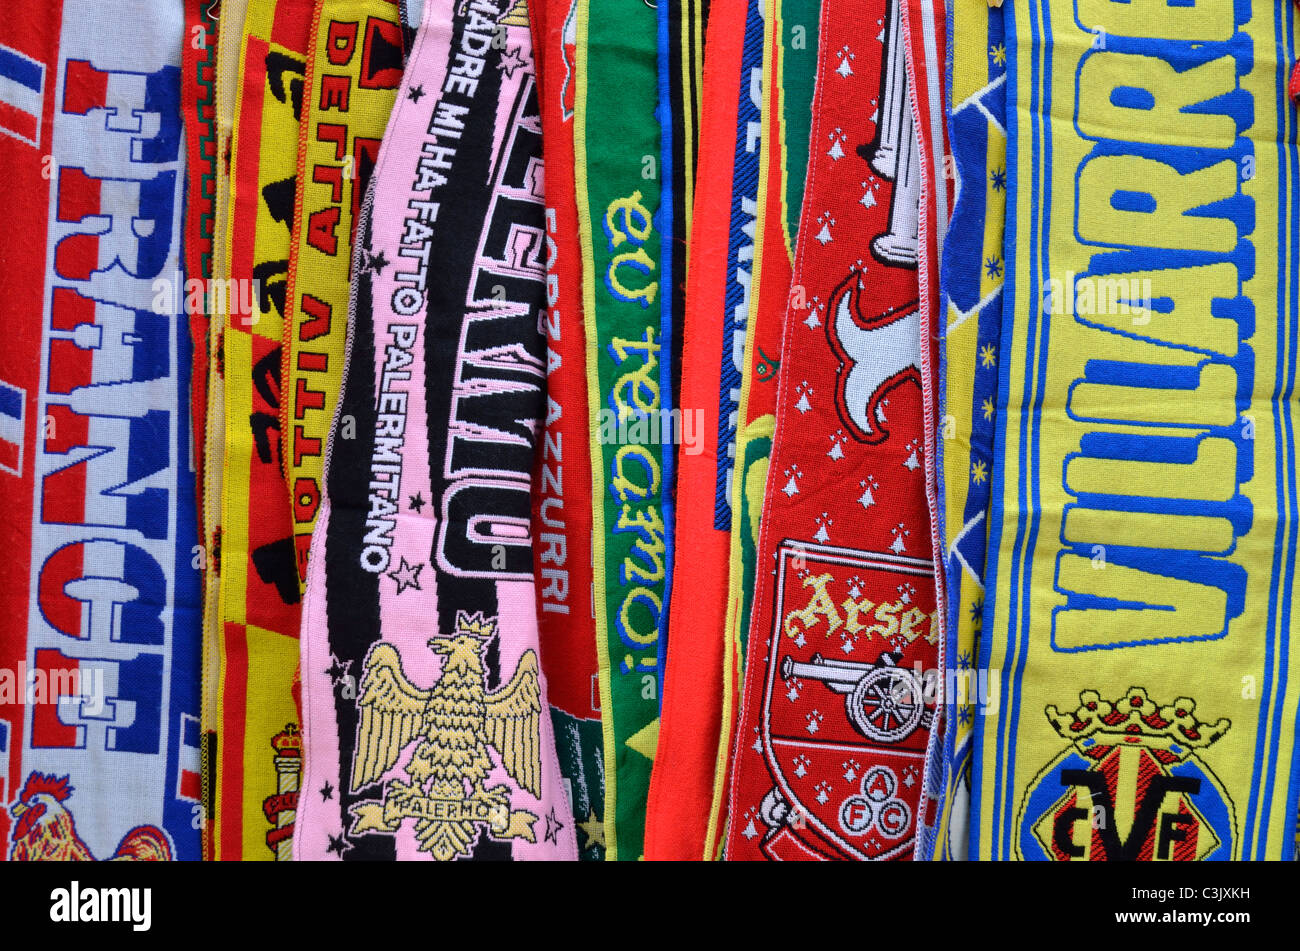 Bufandas de fútbol fotografías imágenes - Alamy